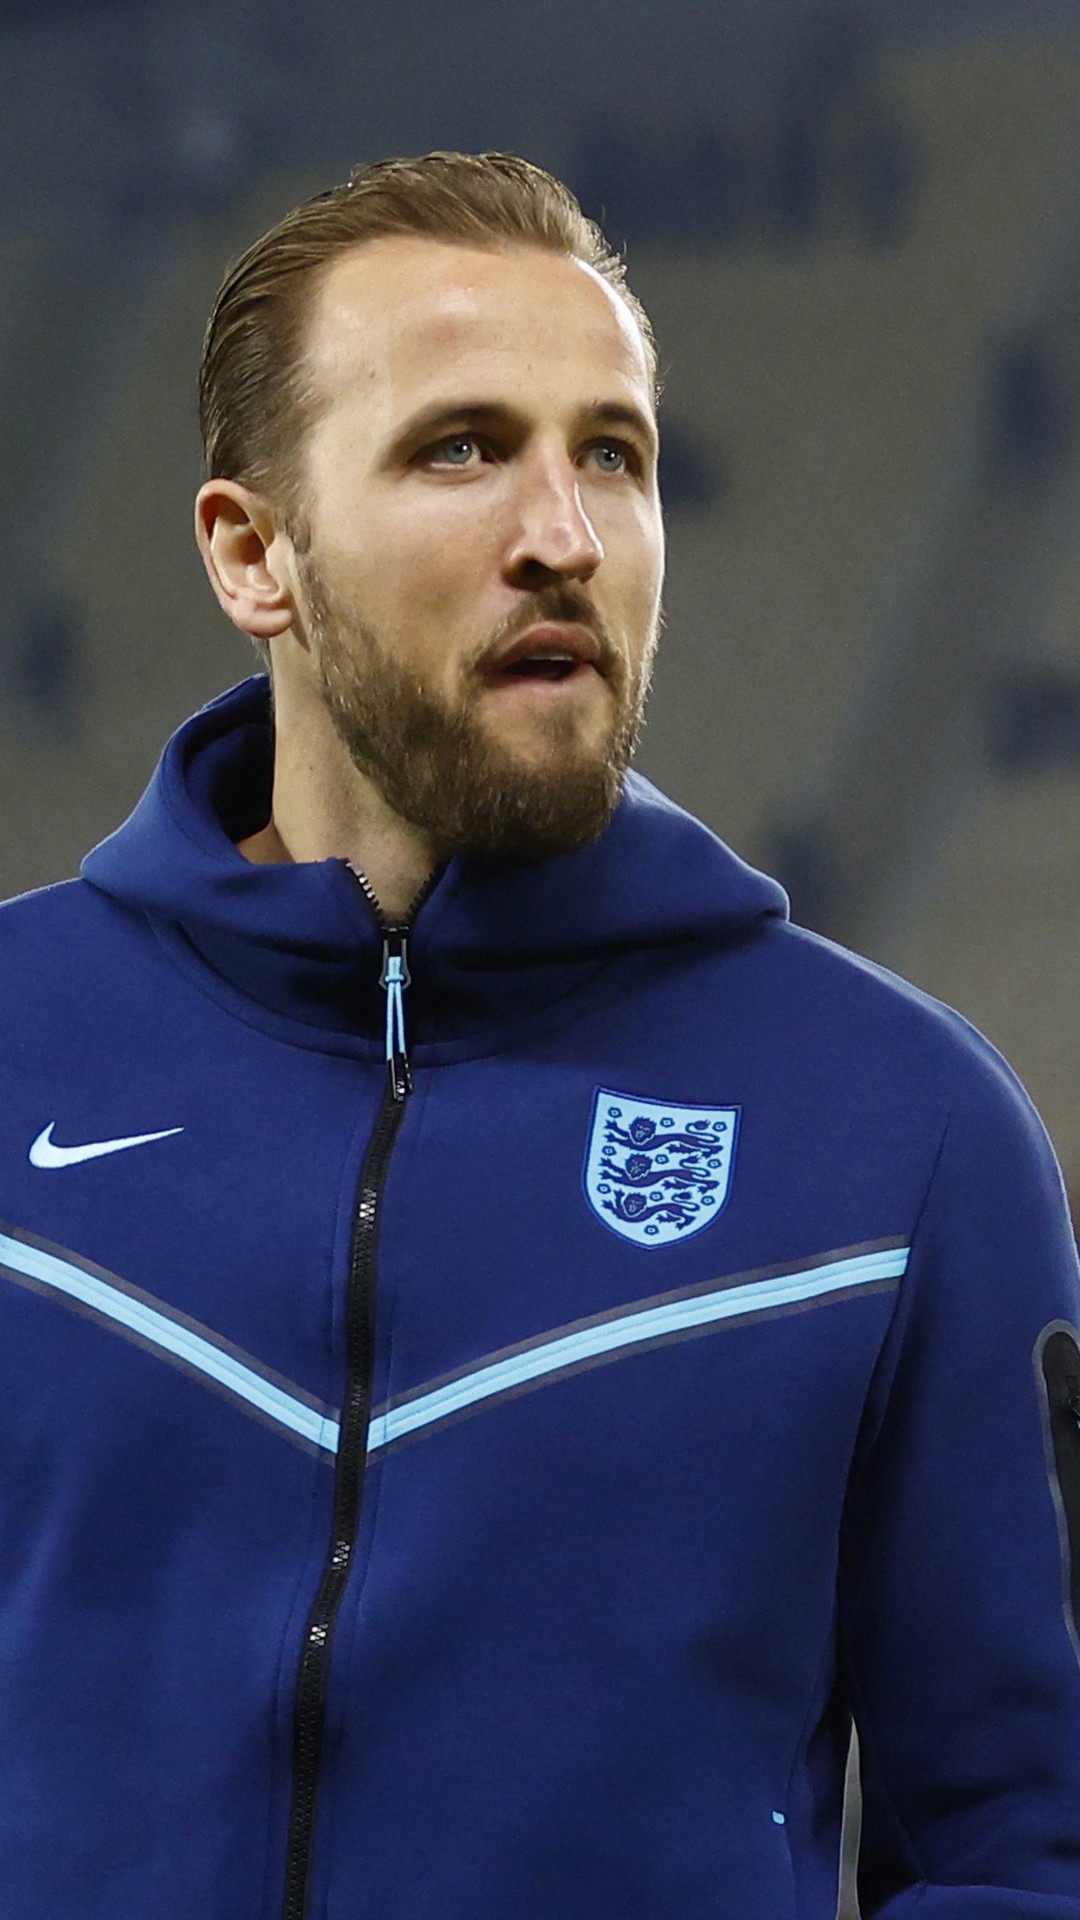 Seleção vai enfrentar Inglaterra com uniforme azul; nova camisa